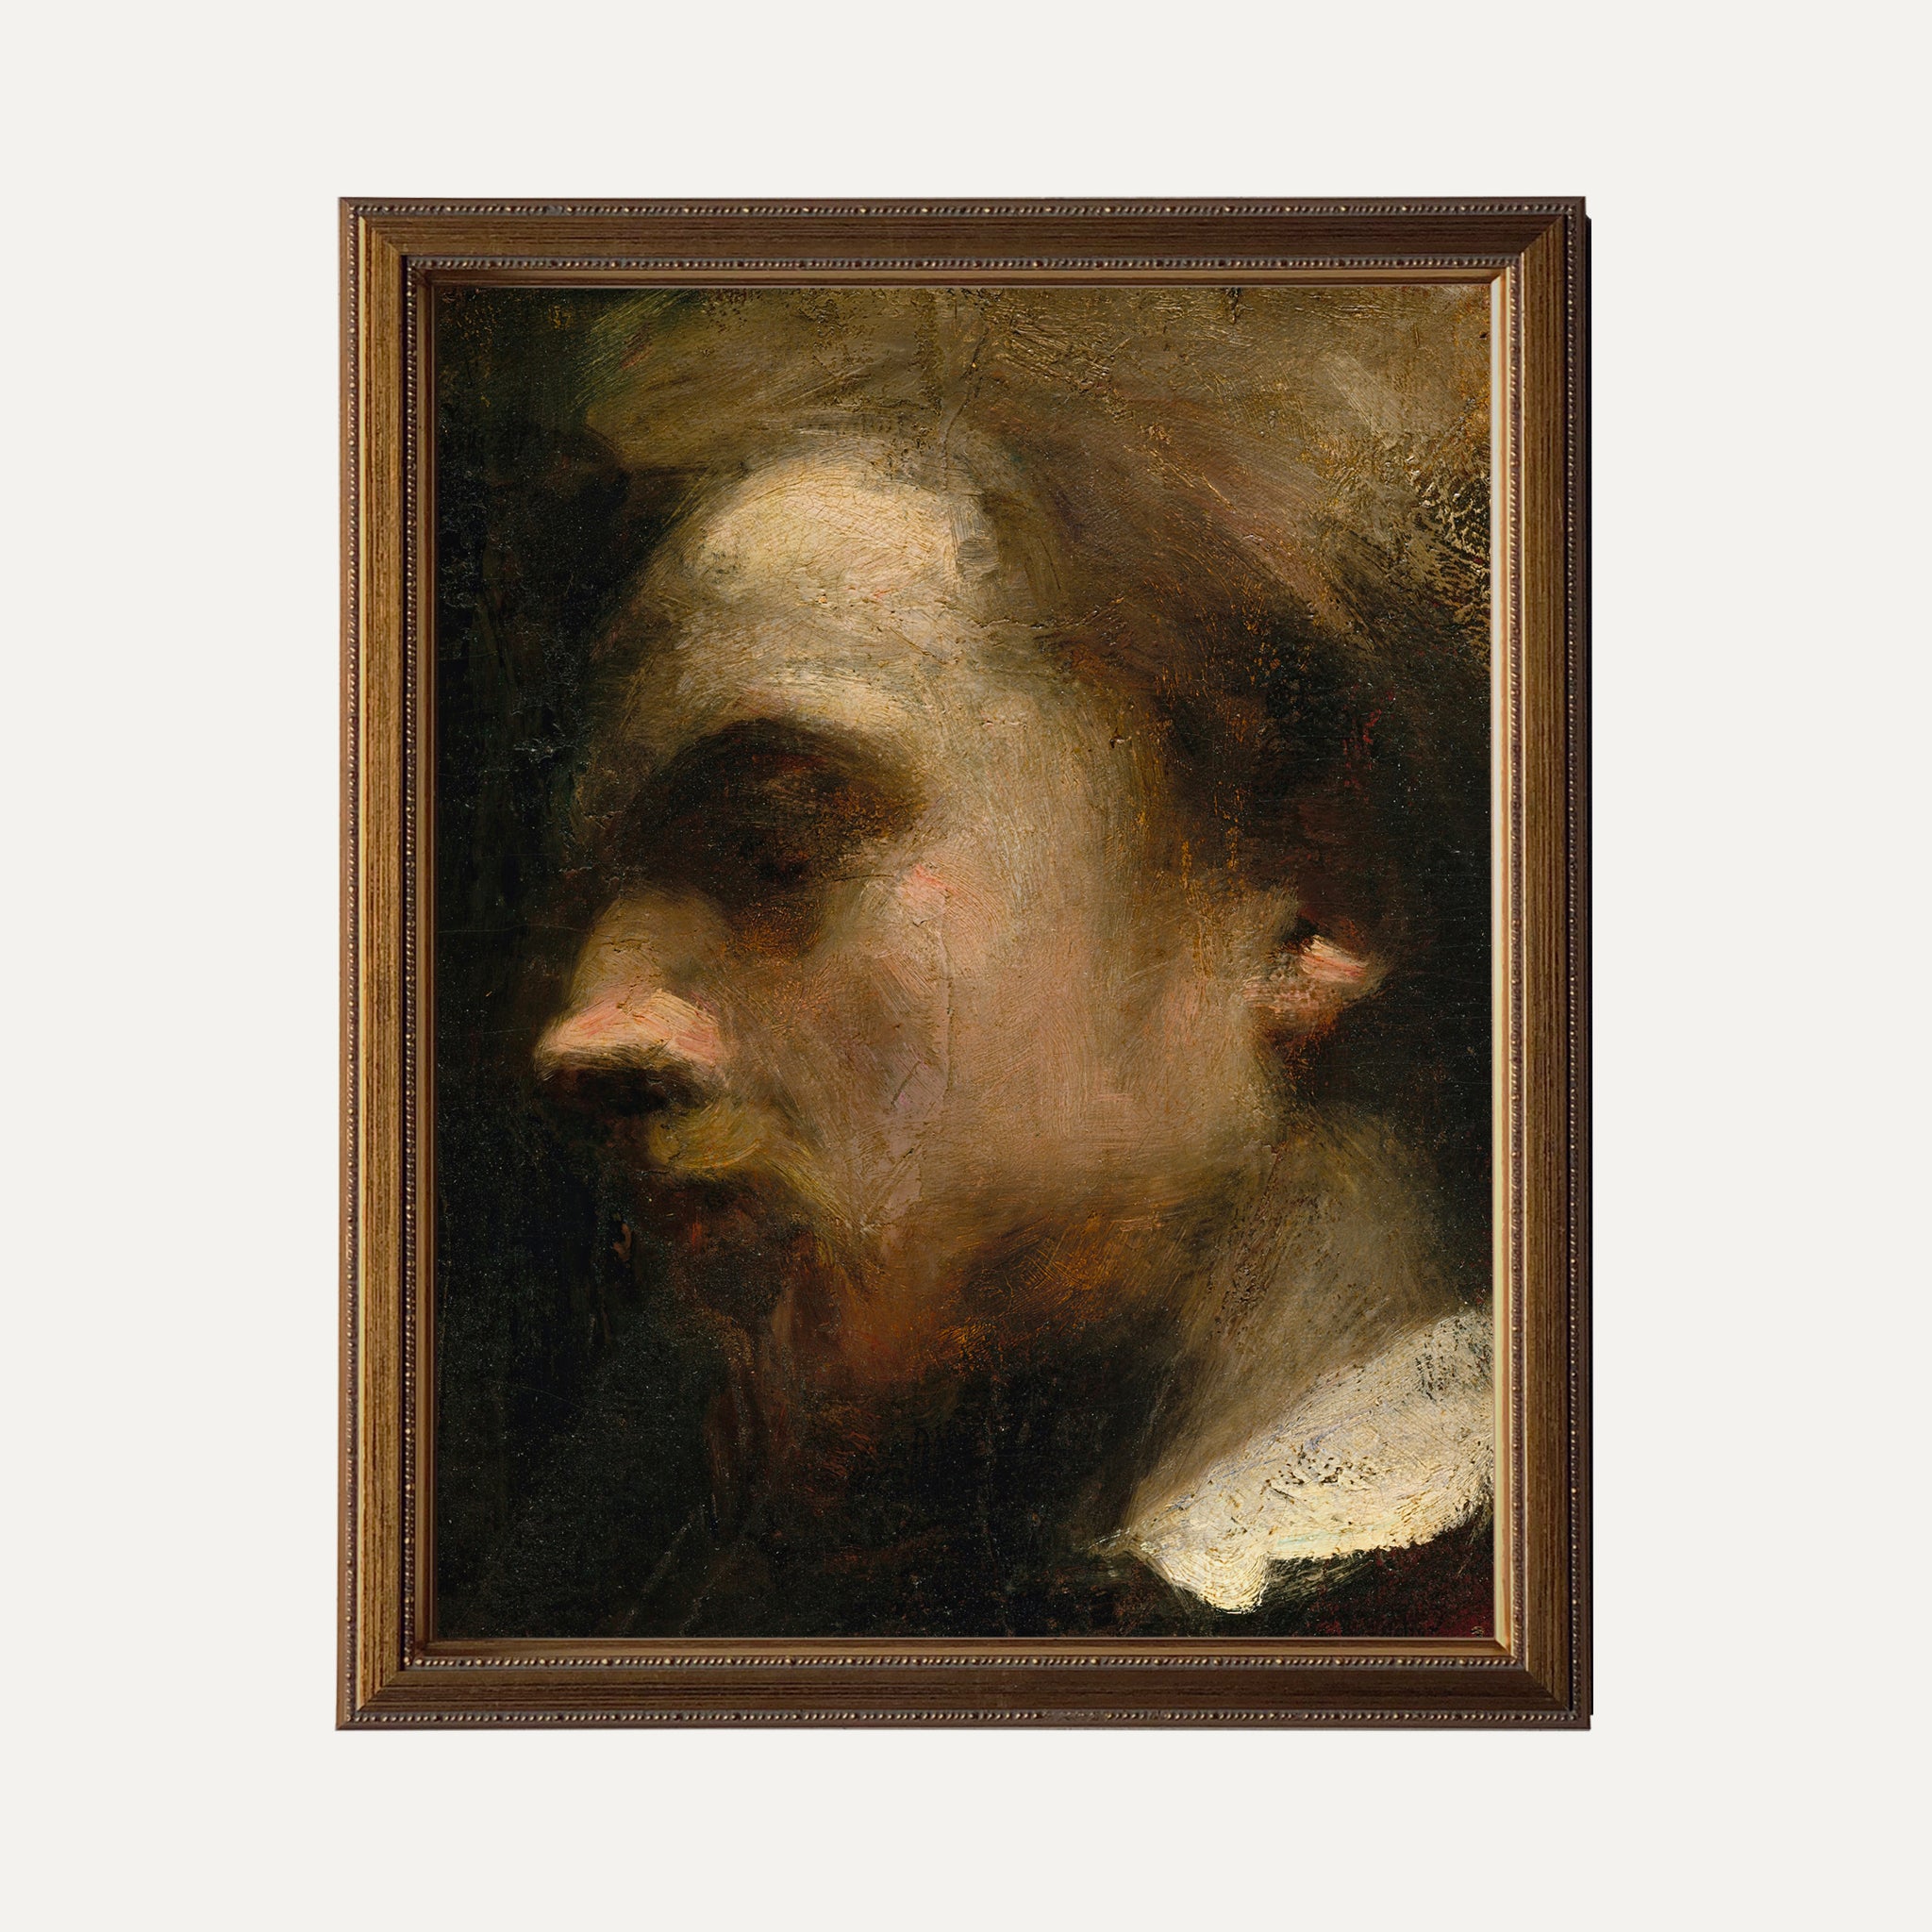 FINE ART PRINT - Henri's portrait